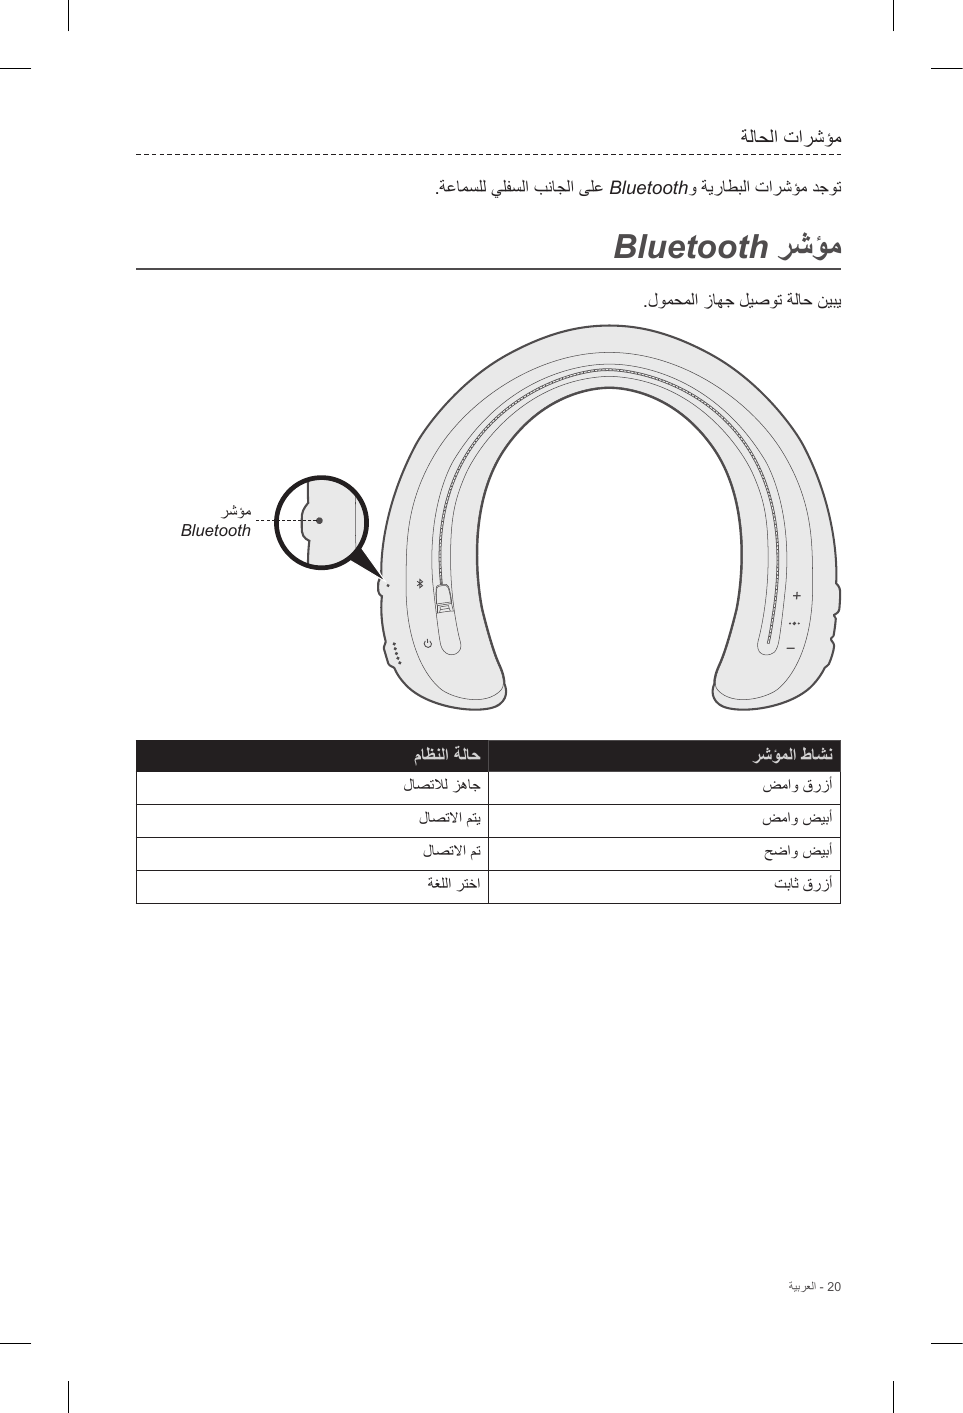 BluetoothBluetoothBluetooth